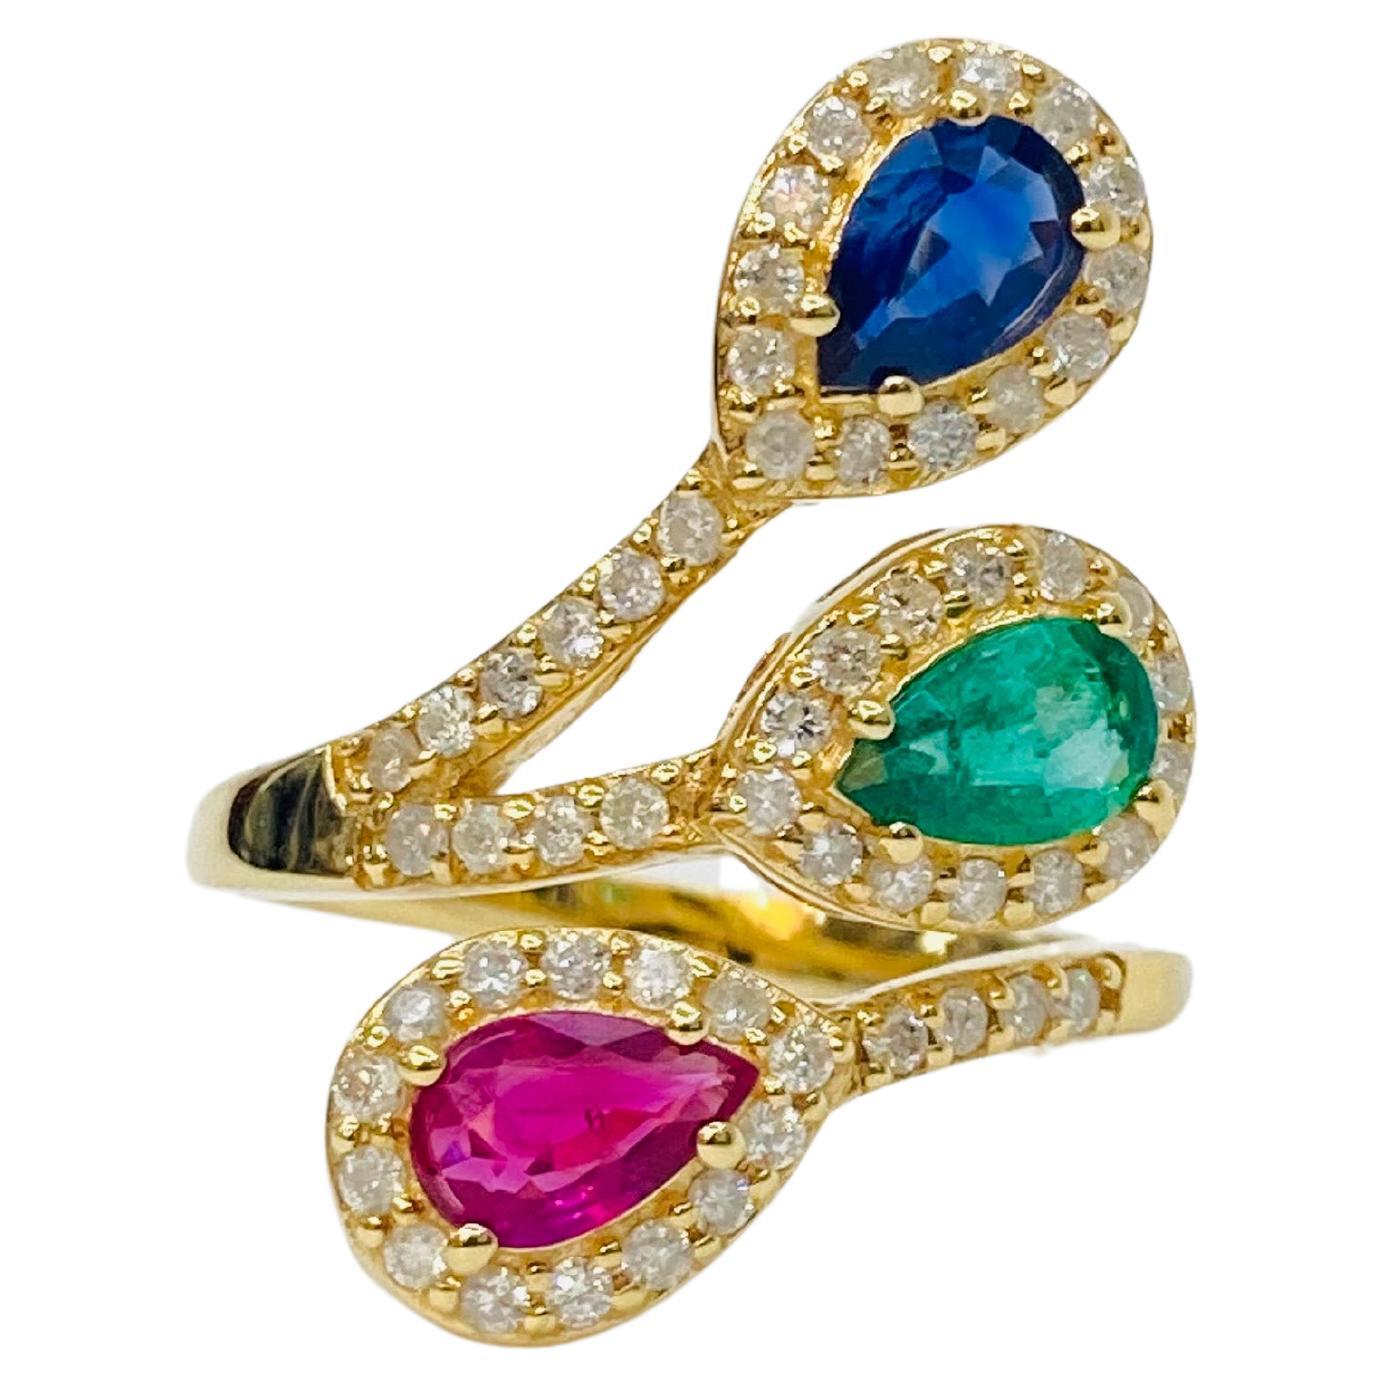 Bochic Retro Vintage Cluster-Ring aus 18 Karat Gold mit Rubin, Smaragd, Saphiren und Diamanten